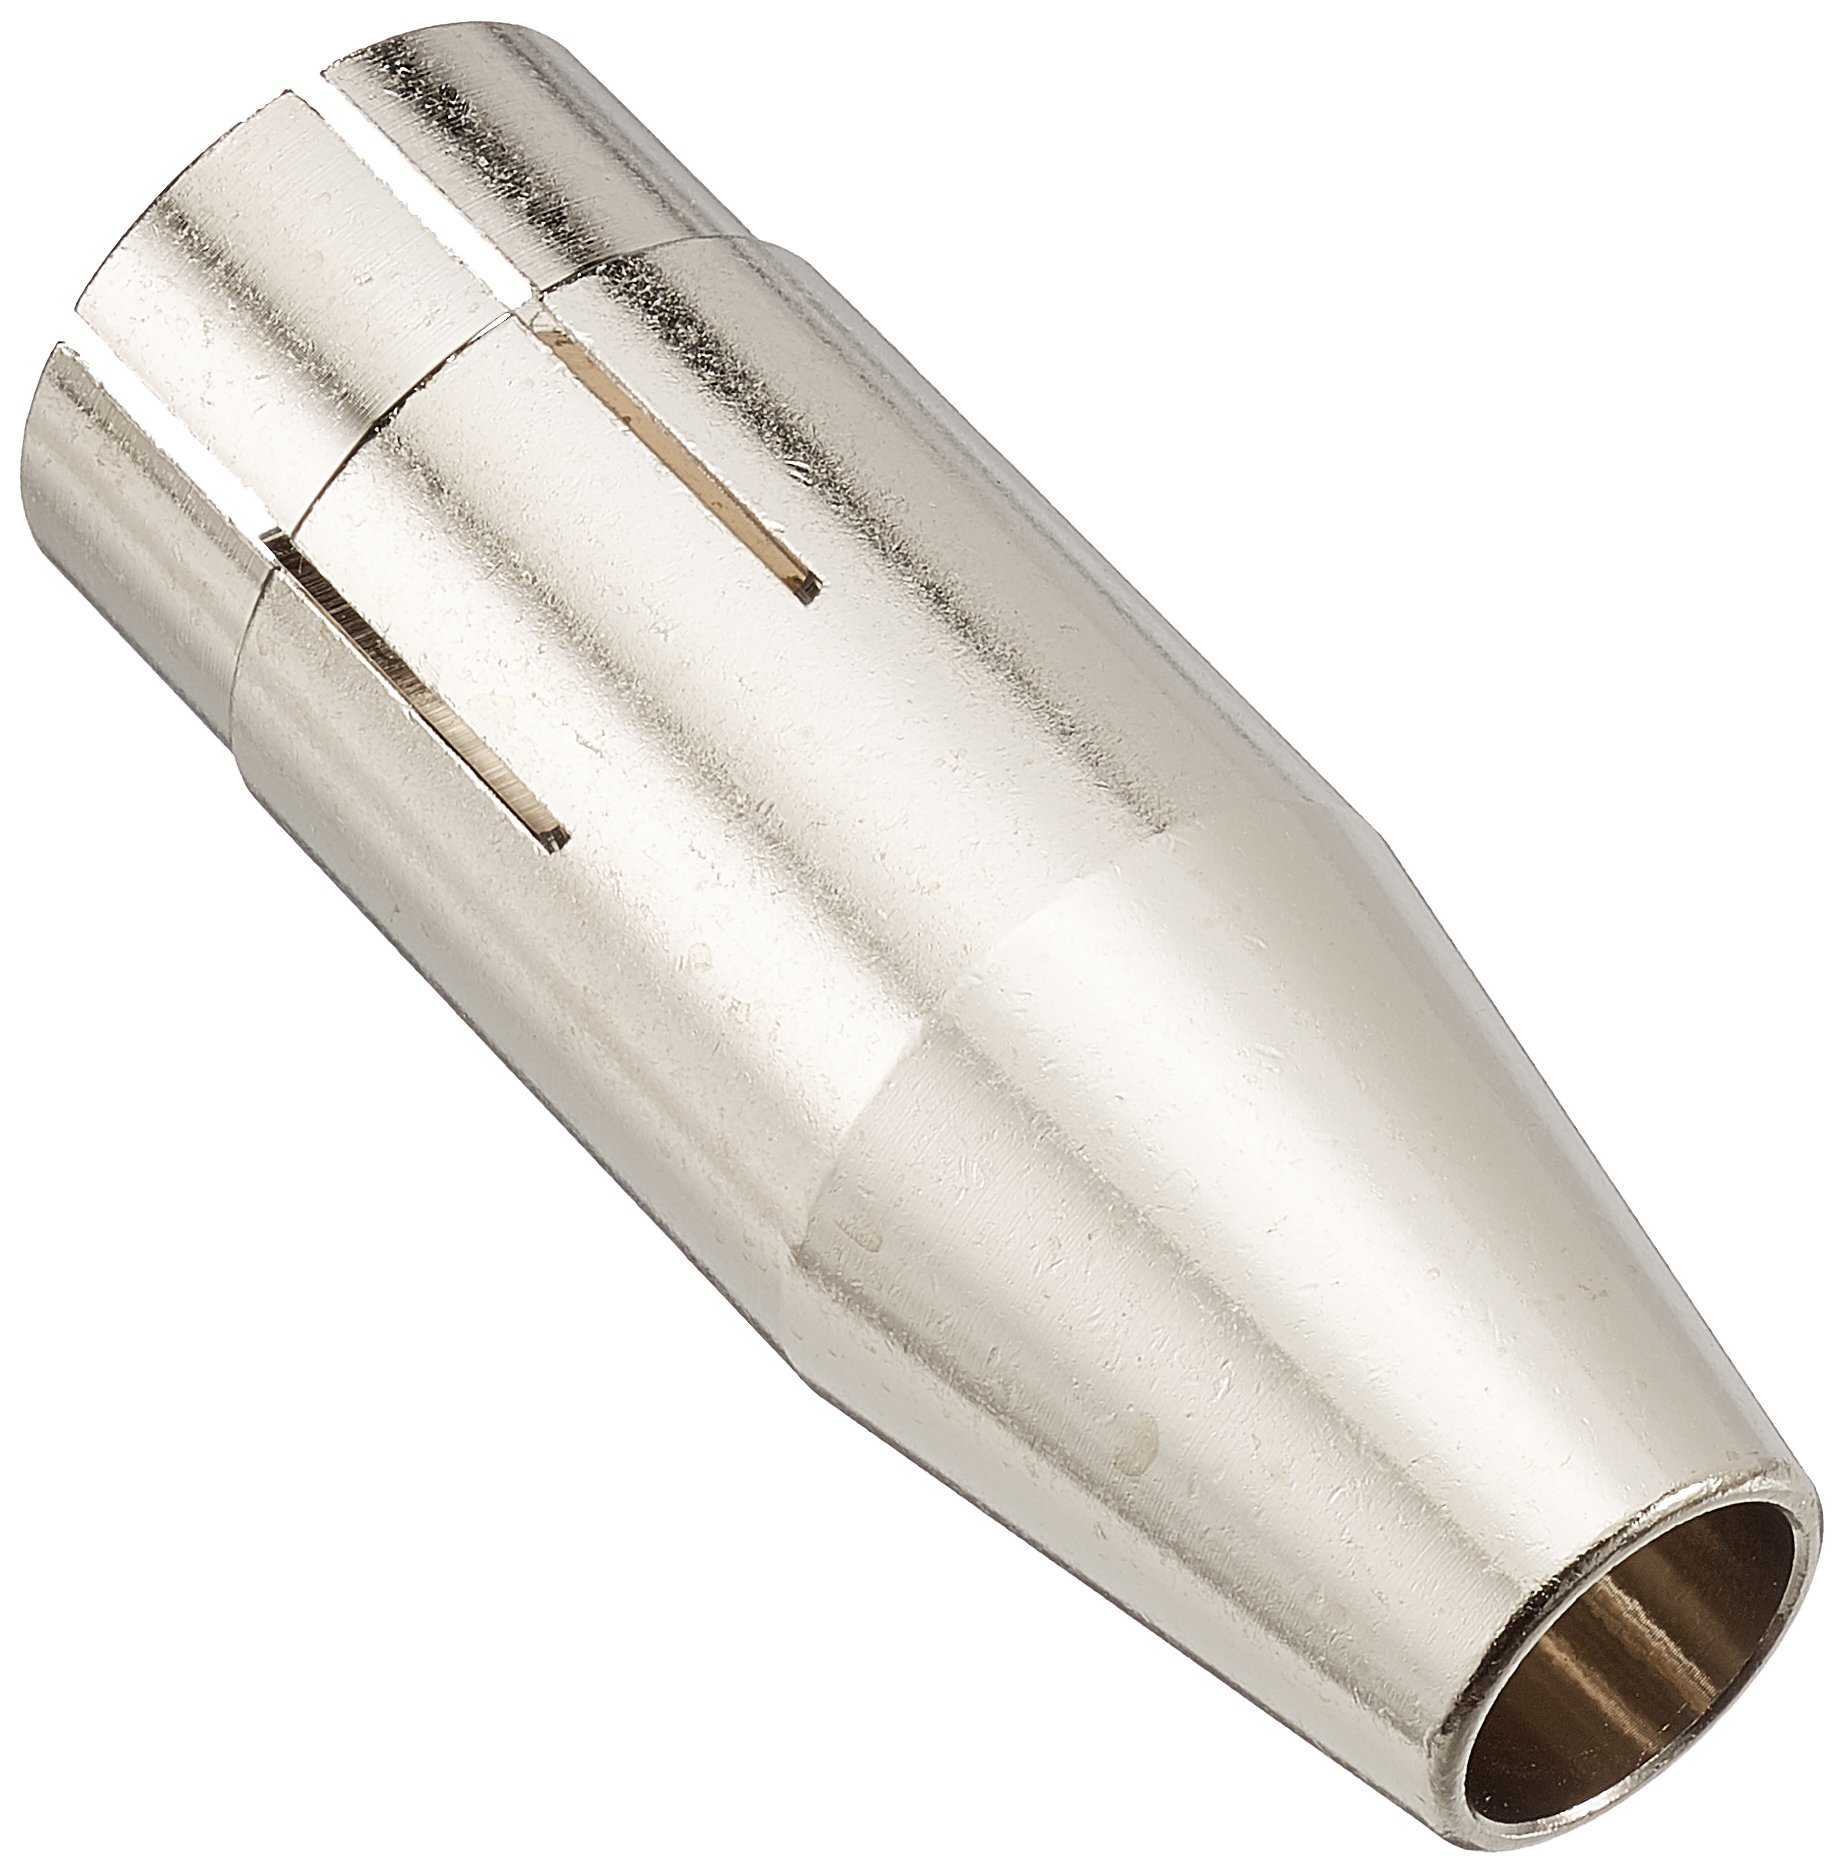 Abicor Binzel 145.0134 Gasdüse für Schweißbrenner, konisch, 13 mm Durchmesser, 67,5 mm Länge, 10 Stück